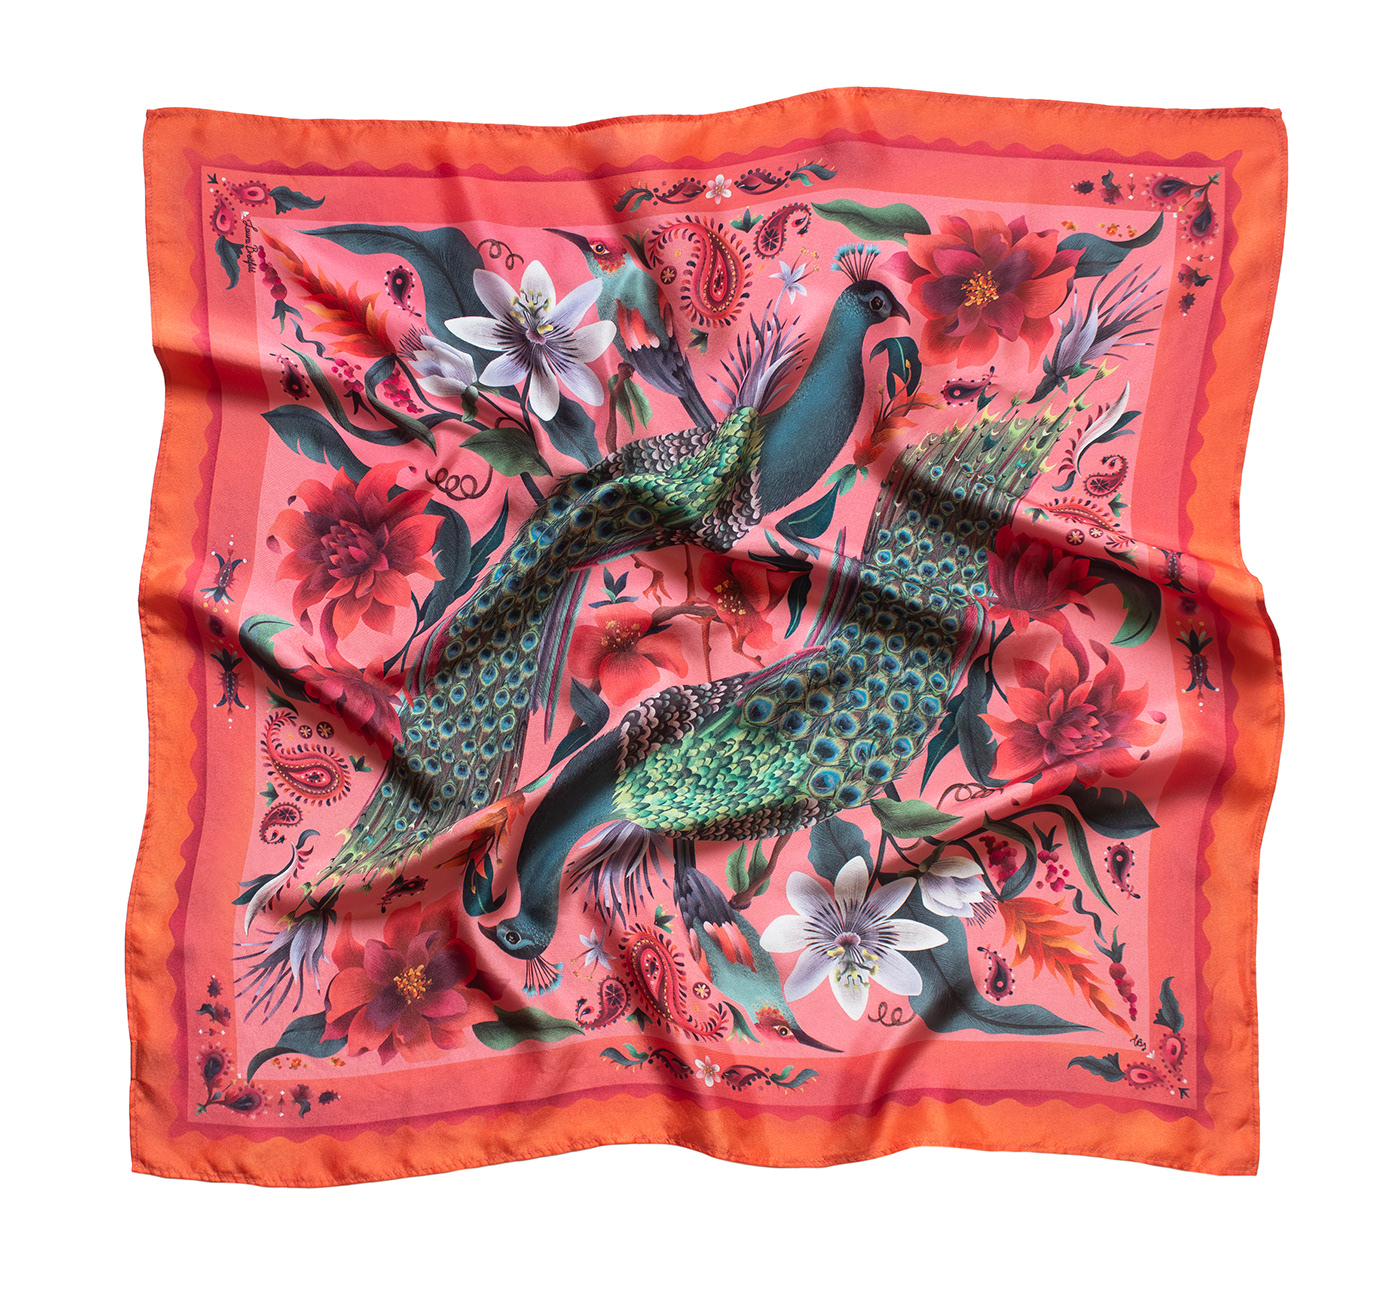 ILLUSTRATION  textil design SILK silk scarf fashion design pattern desigm